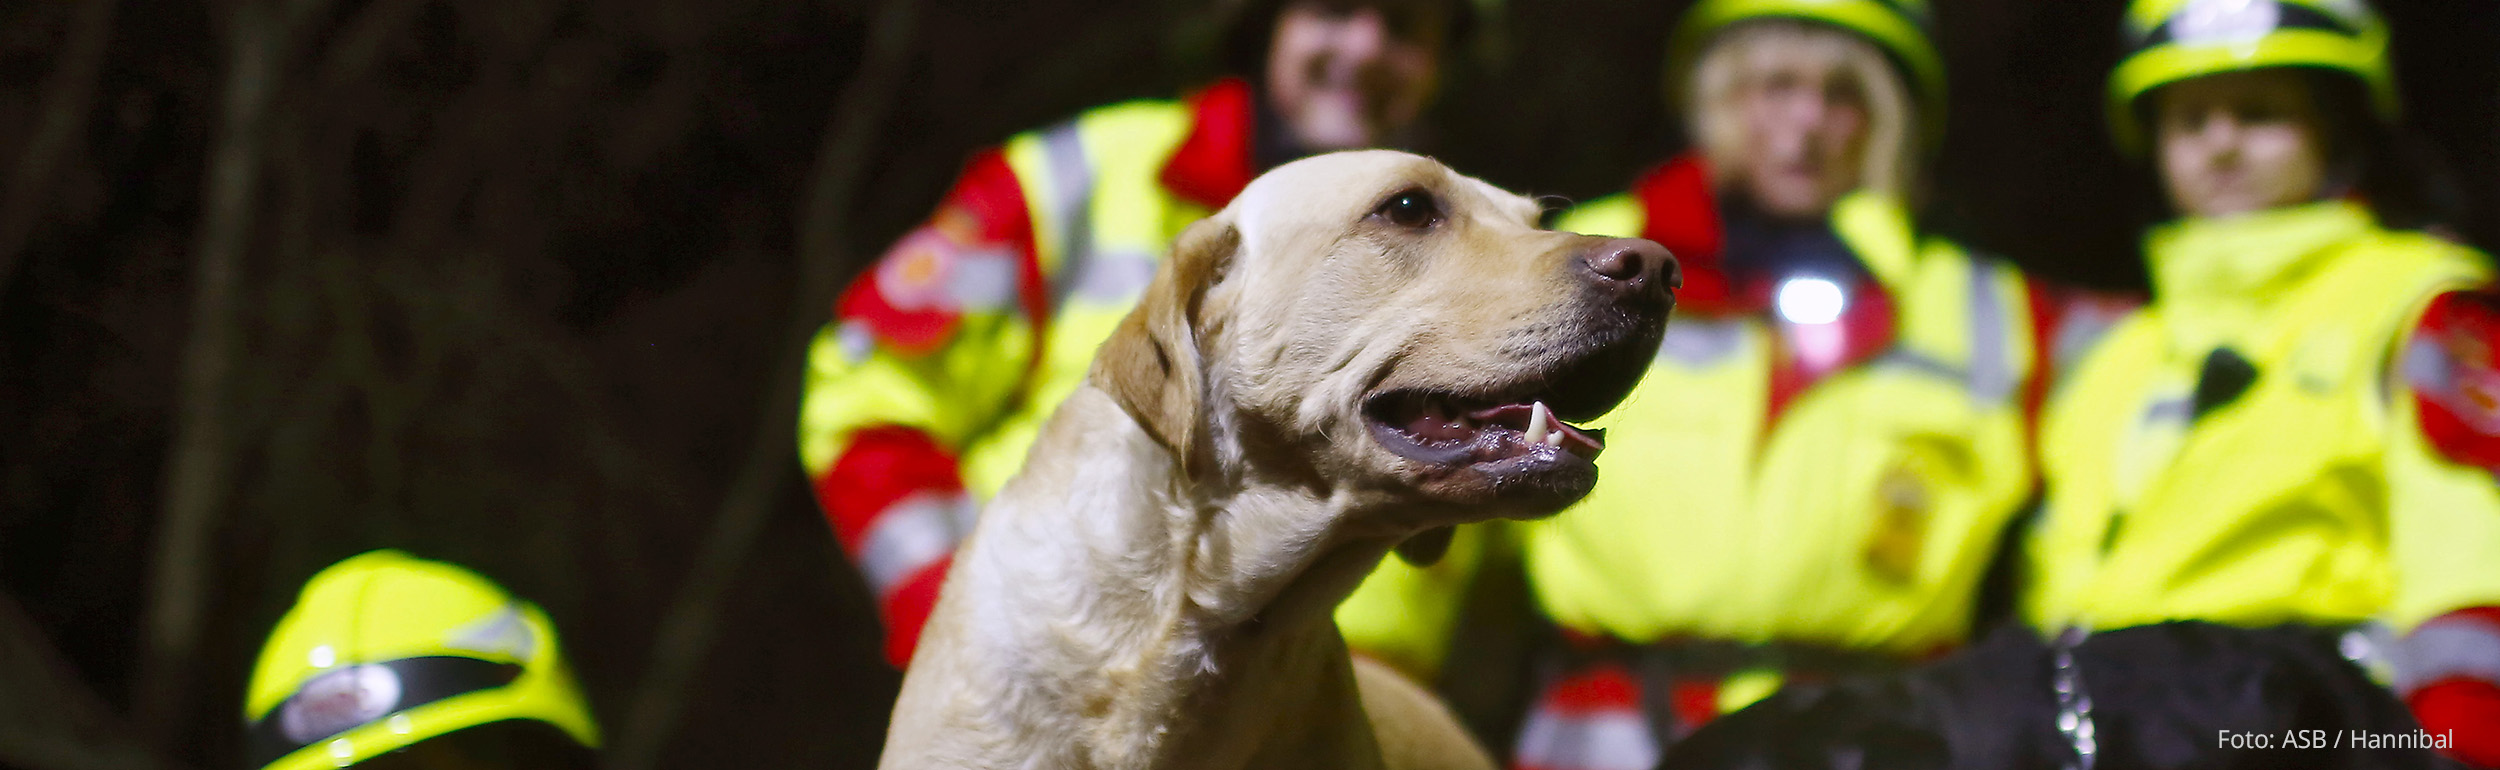 Rettungshund im Vordergrund, Rettungshundeführer:innen im Hintergrund